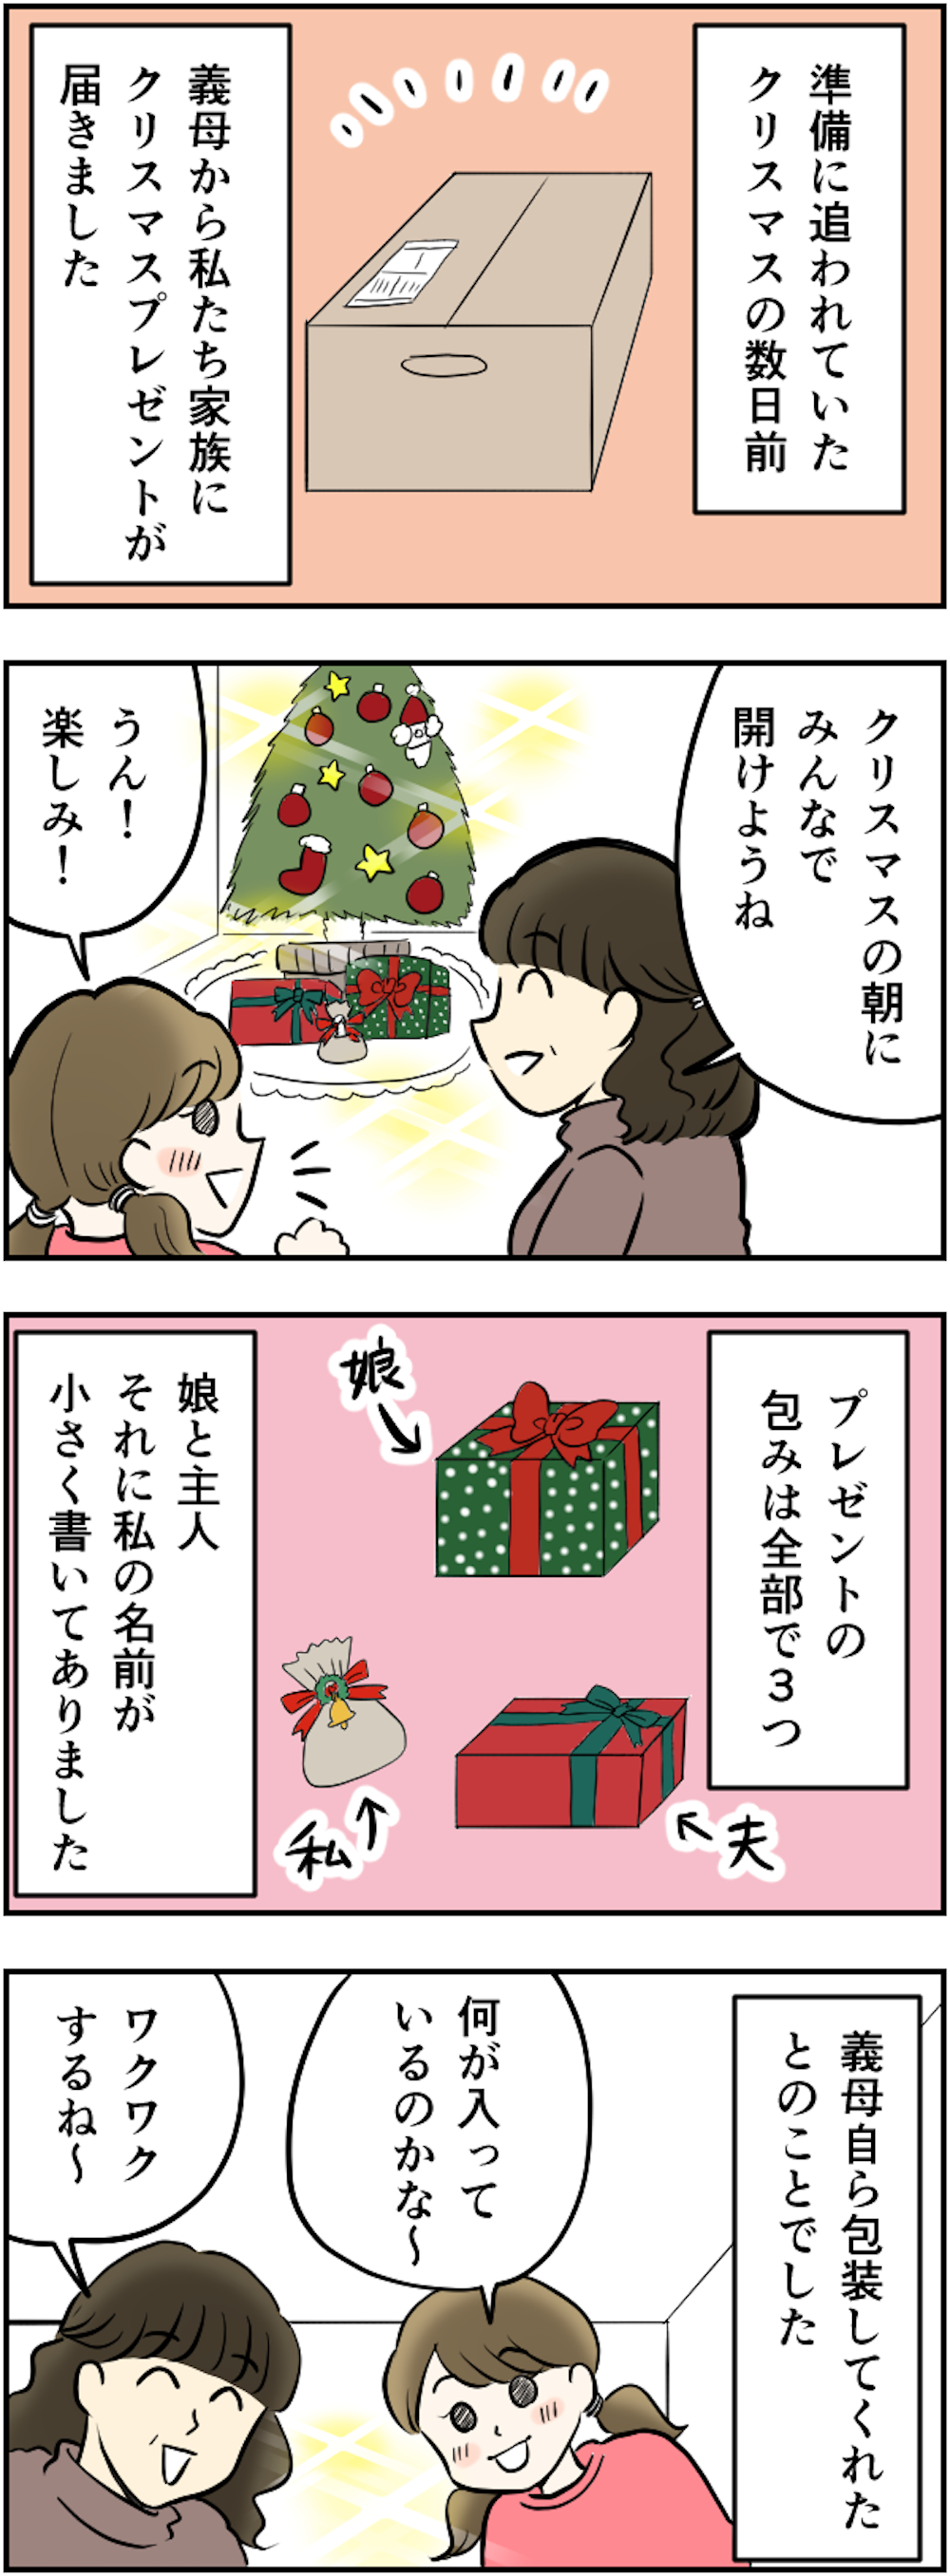 【漫画】クリスマスプレゼントで「義母の格付け」が見えた!? 百科事典、香水、そして私には... 70ラフ_012.png